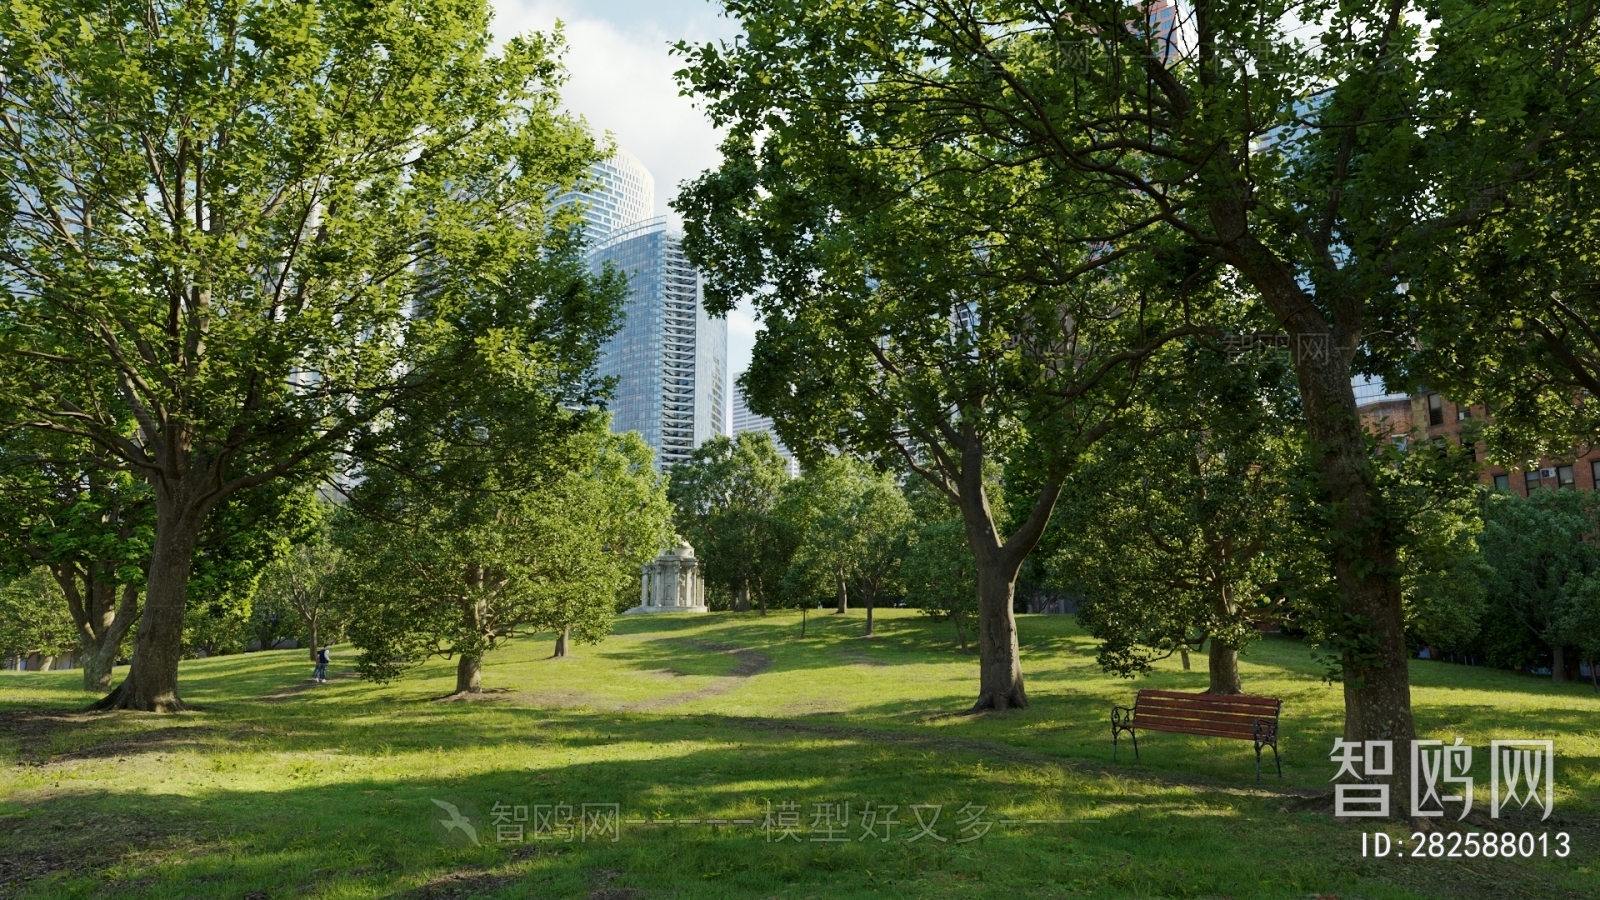 Modern Park Landscape